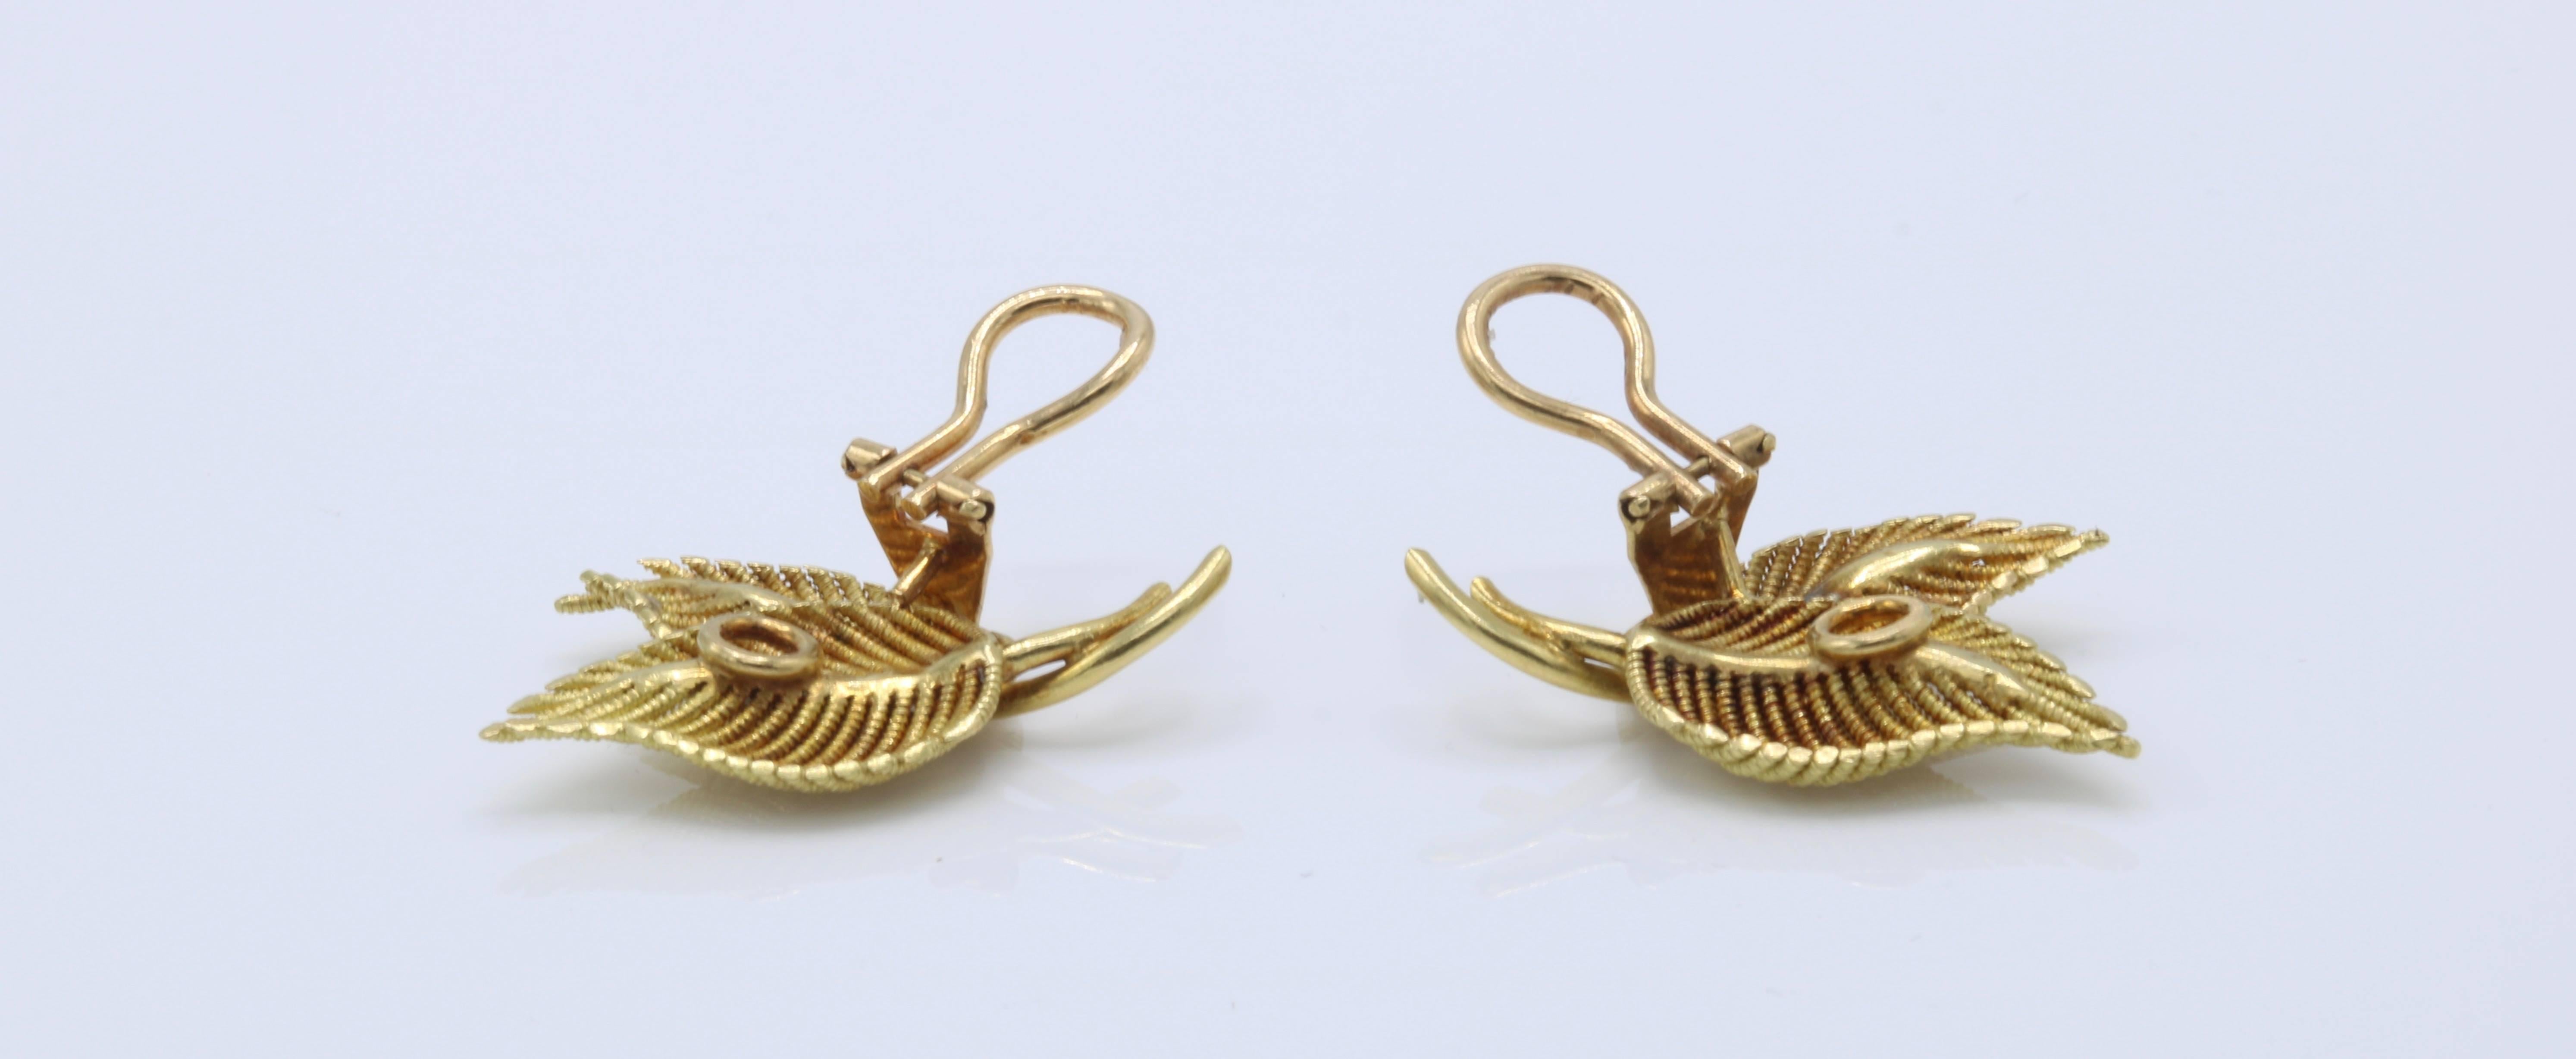 Tiffany & Co. Leaf Clip-On Earrings

18k Gold 